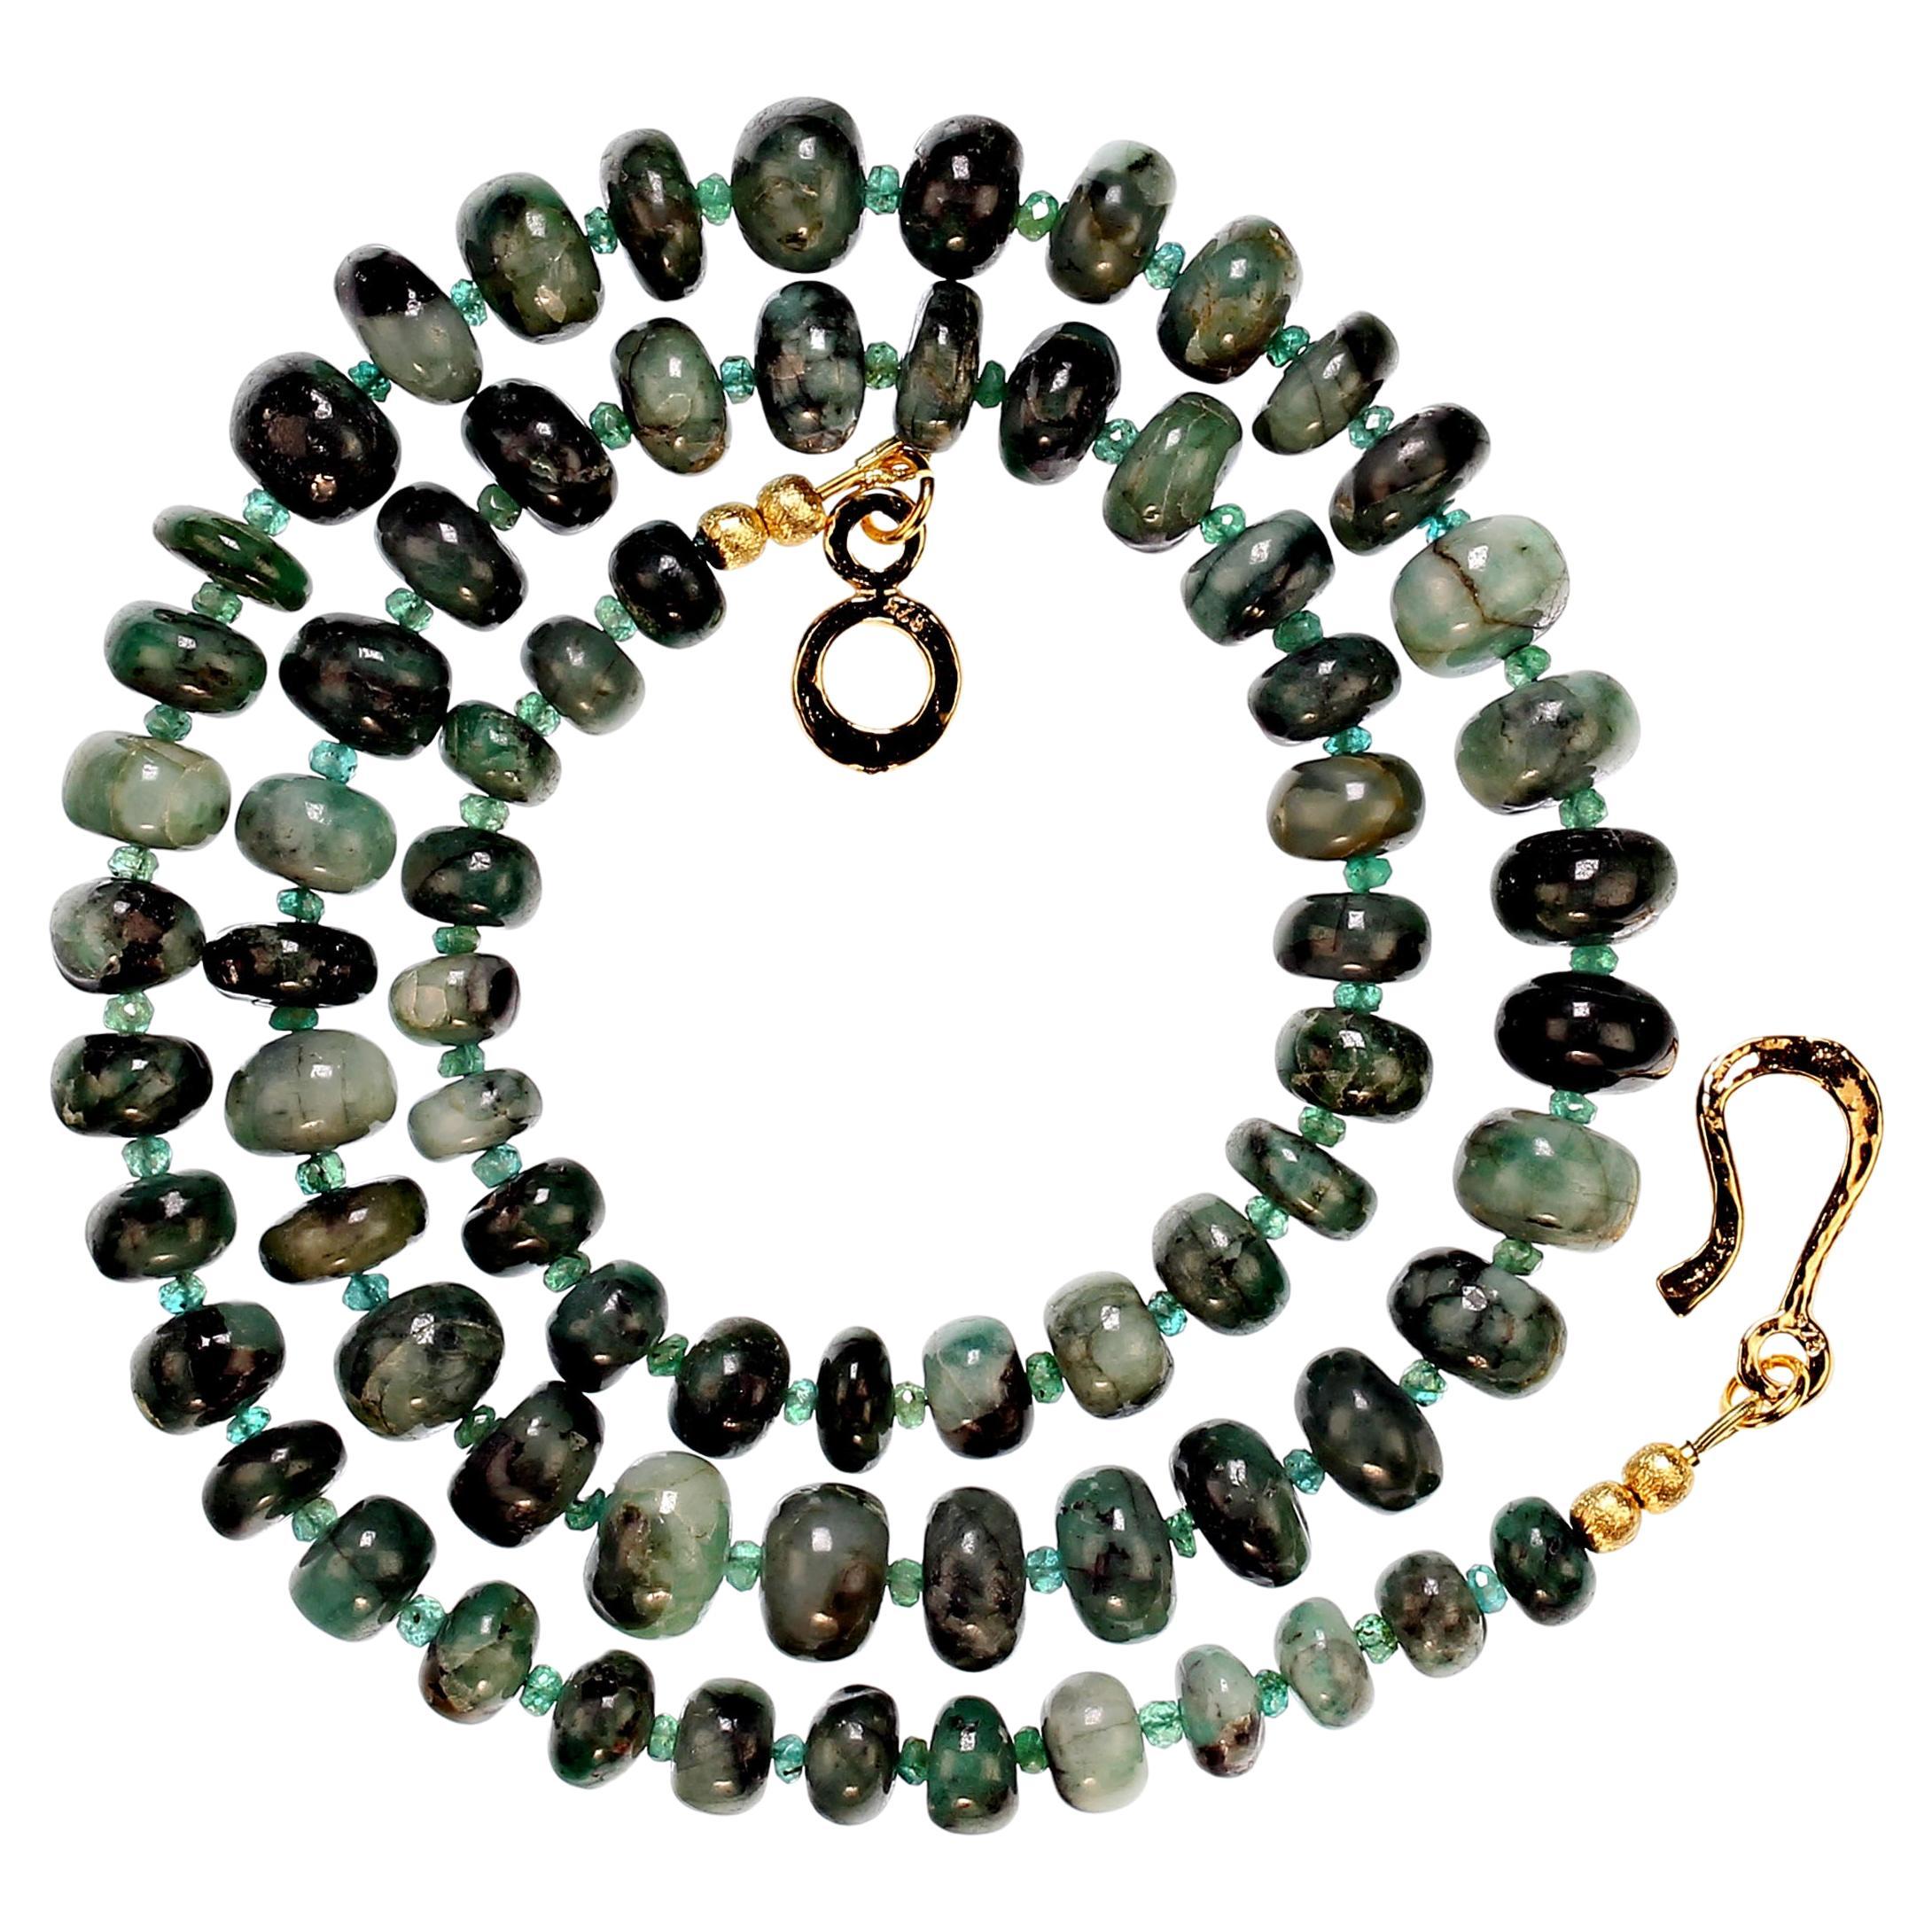 25 Zoll abgestufte Smaragd Matrix Halskette mit facettierten Smaragd, 3,5 mm, Akzente.  Die Smaragde haben eine Größe von 8-11 mm und sind schöne, hochglanzpolierte, glatte Rondellen. Die Kette ist mit einem gelben Vermeil 14K Haken und Öse